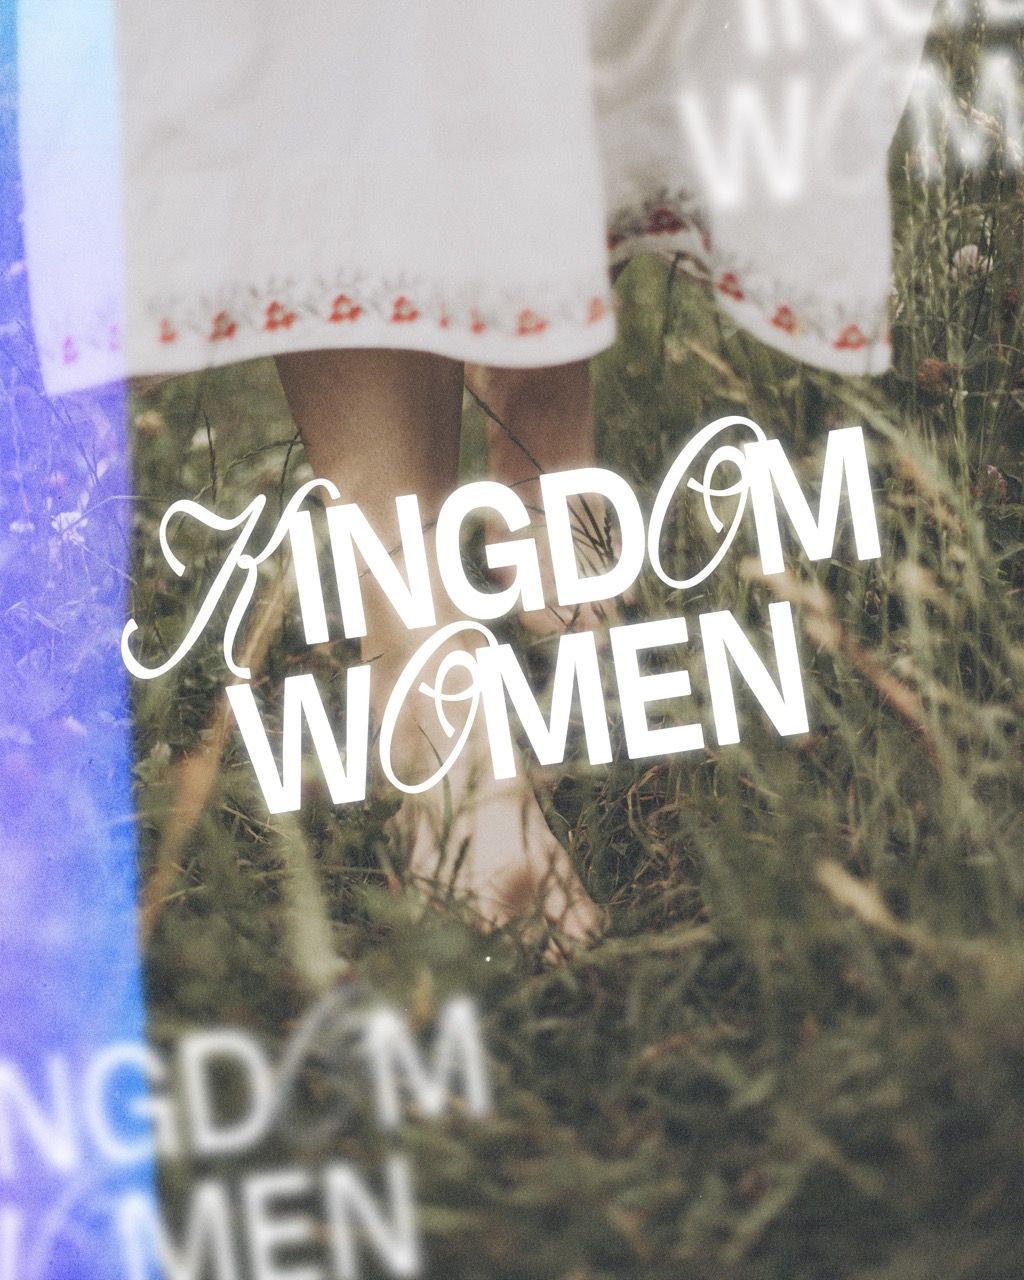 Kingdom Women